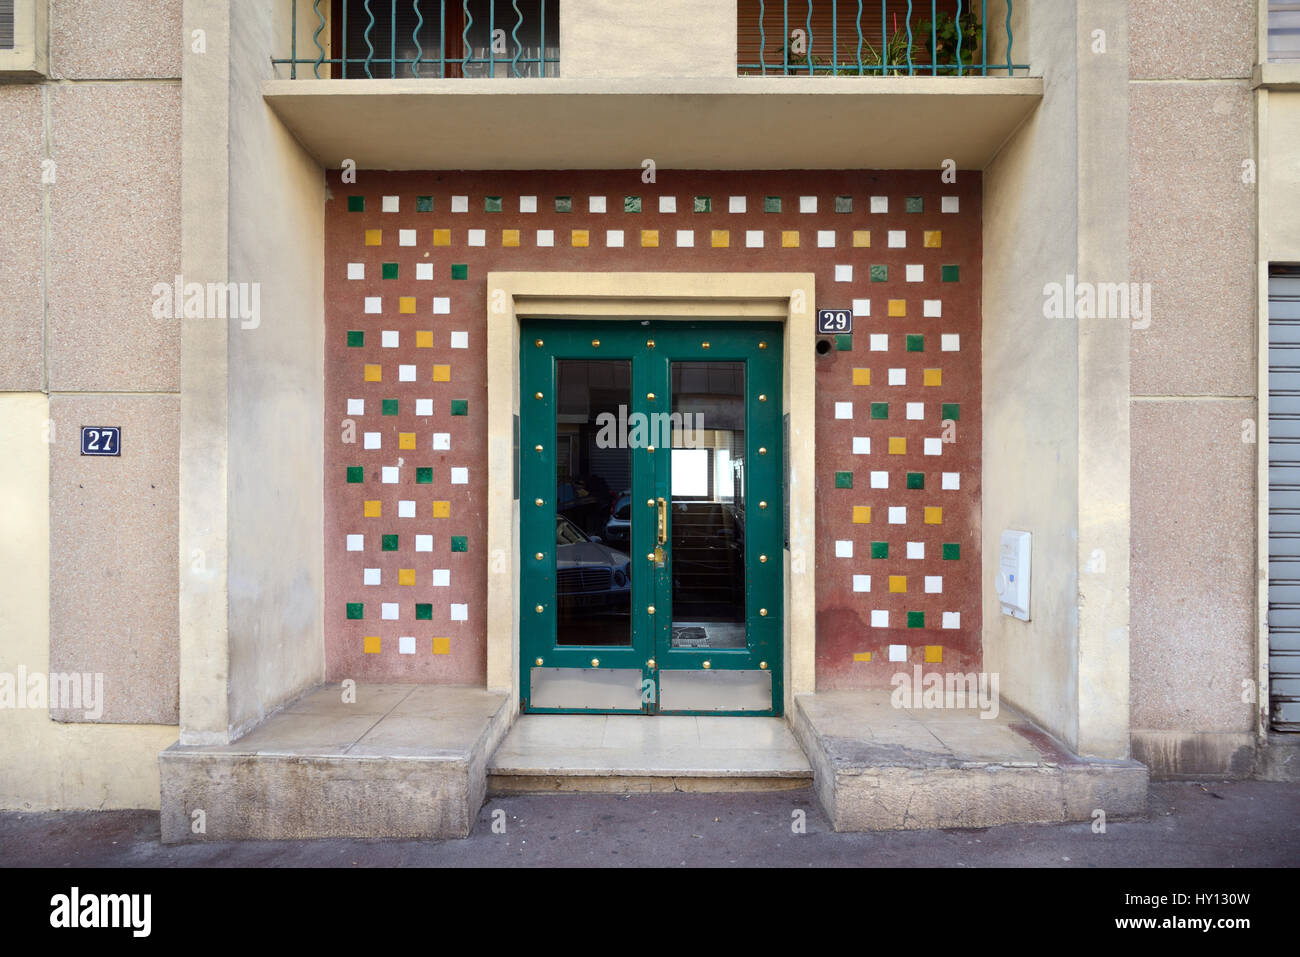 Entrée moderniste en complexe de logement d'après-guerre (1950) Marseille France Banque D'Images